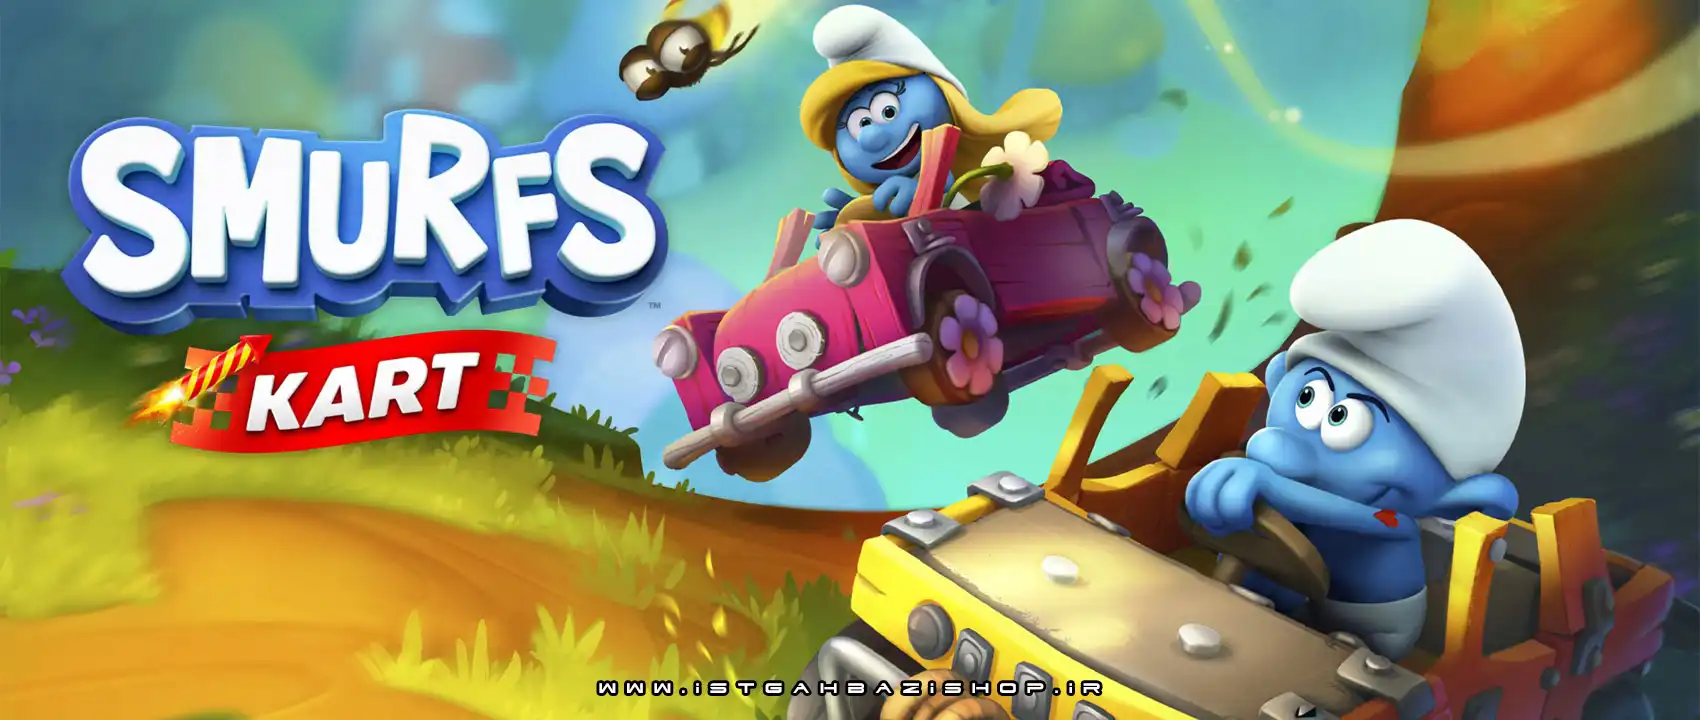 بازی Smurfs Kart برای PS4